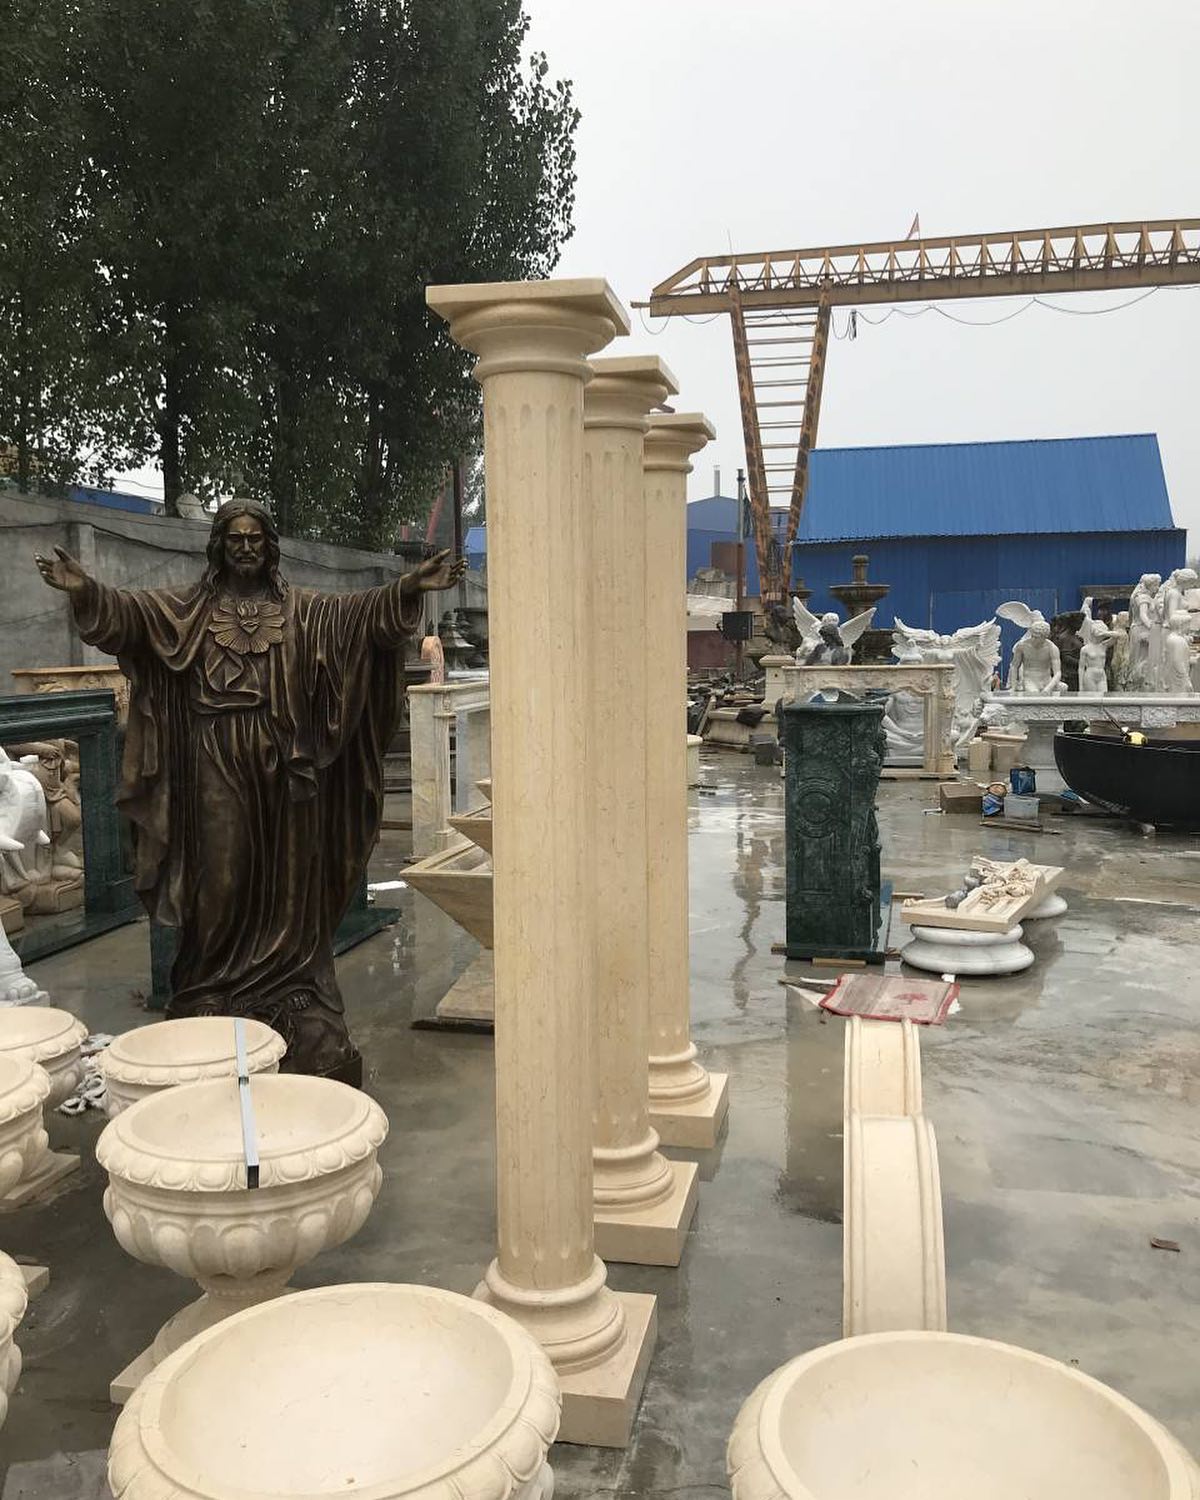 Marble pillar